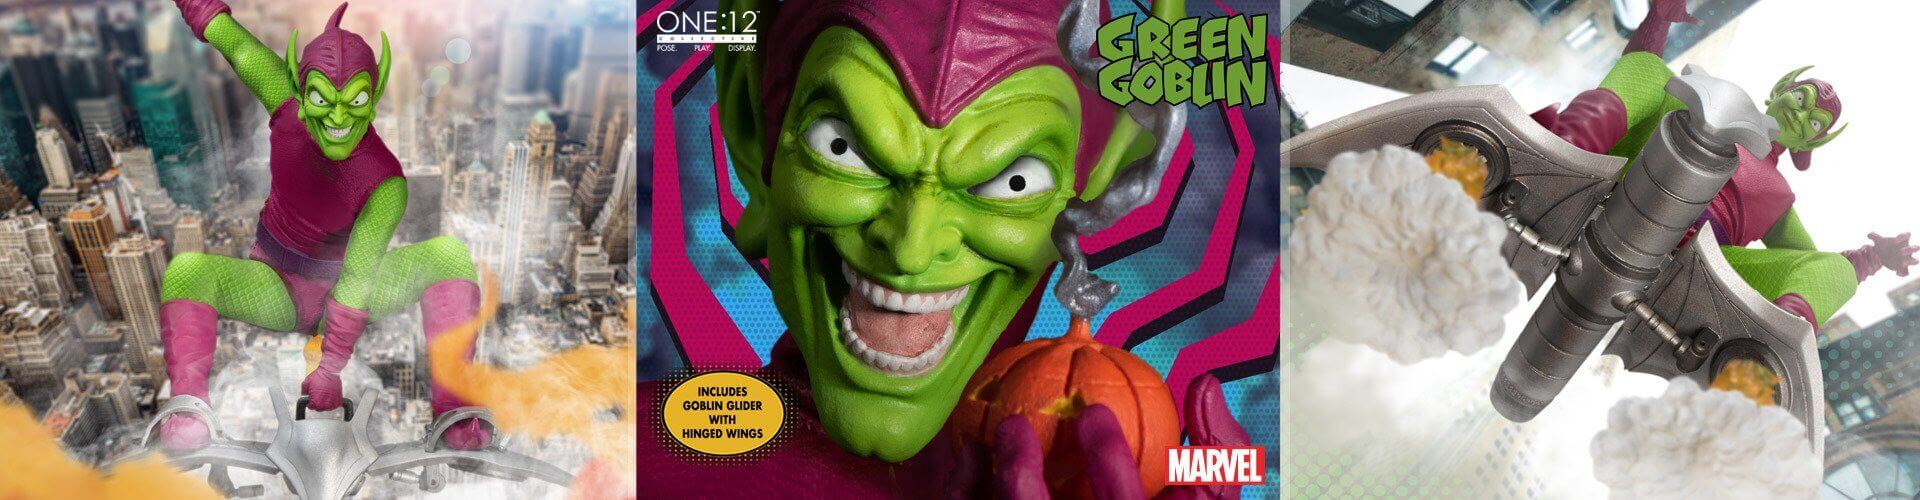  Mezco One:12 Collective Green Goblin Deluxe Edition